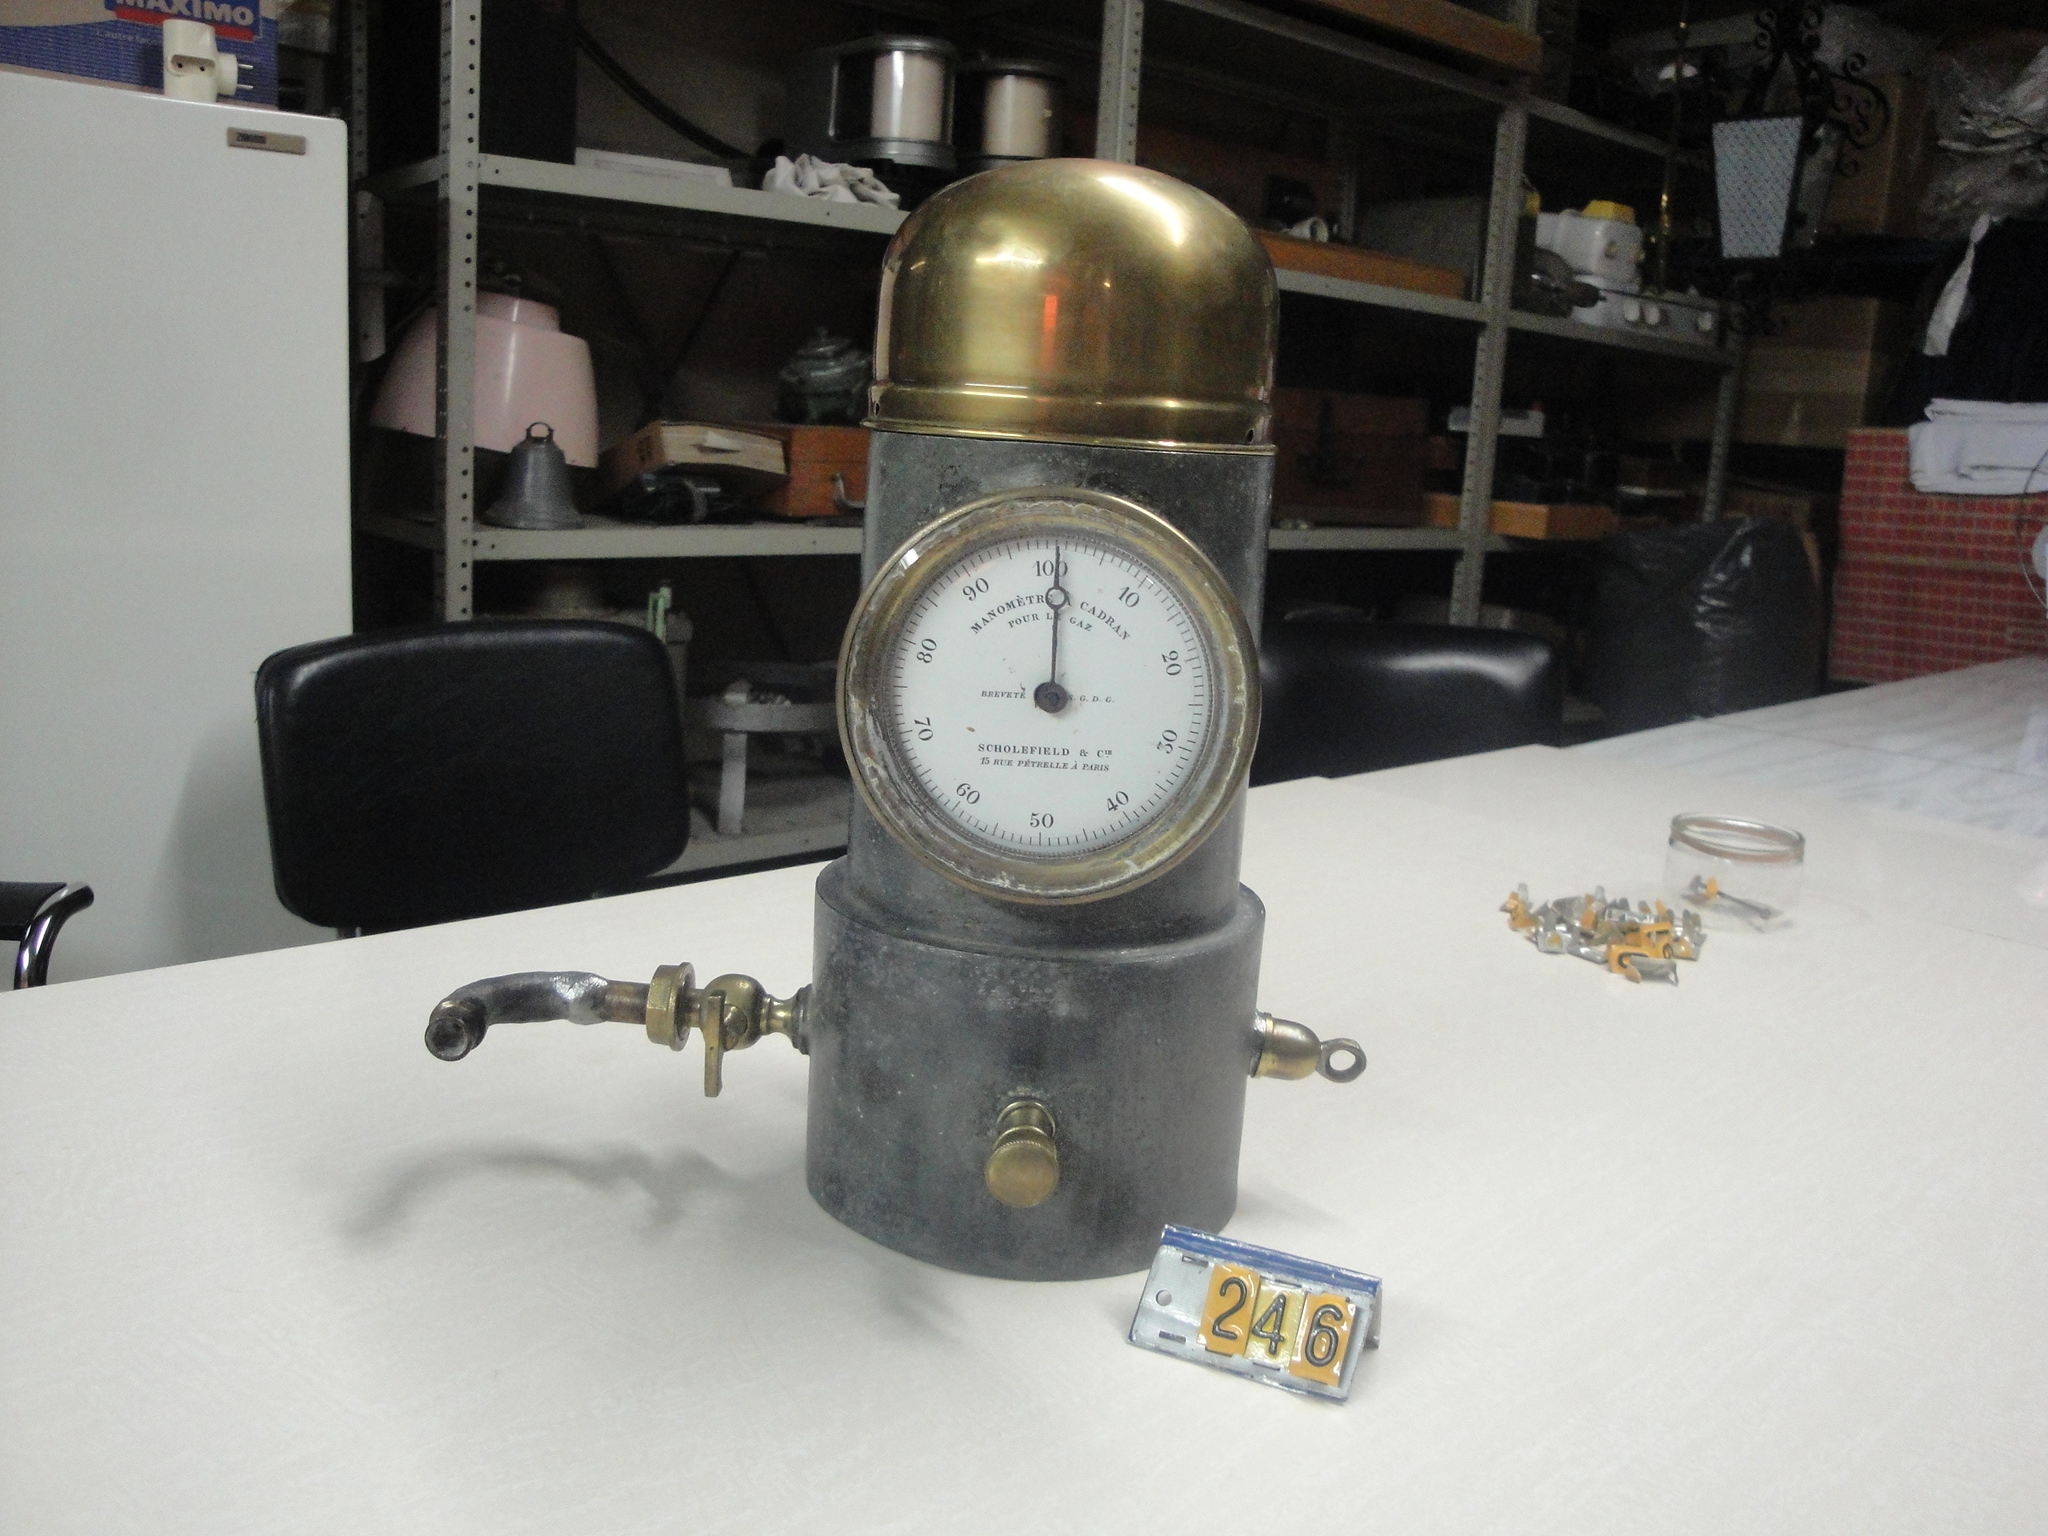  Collection ASPEG, pièce numéro 246 : indicateur de pression gaz